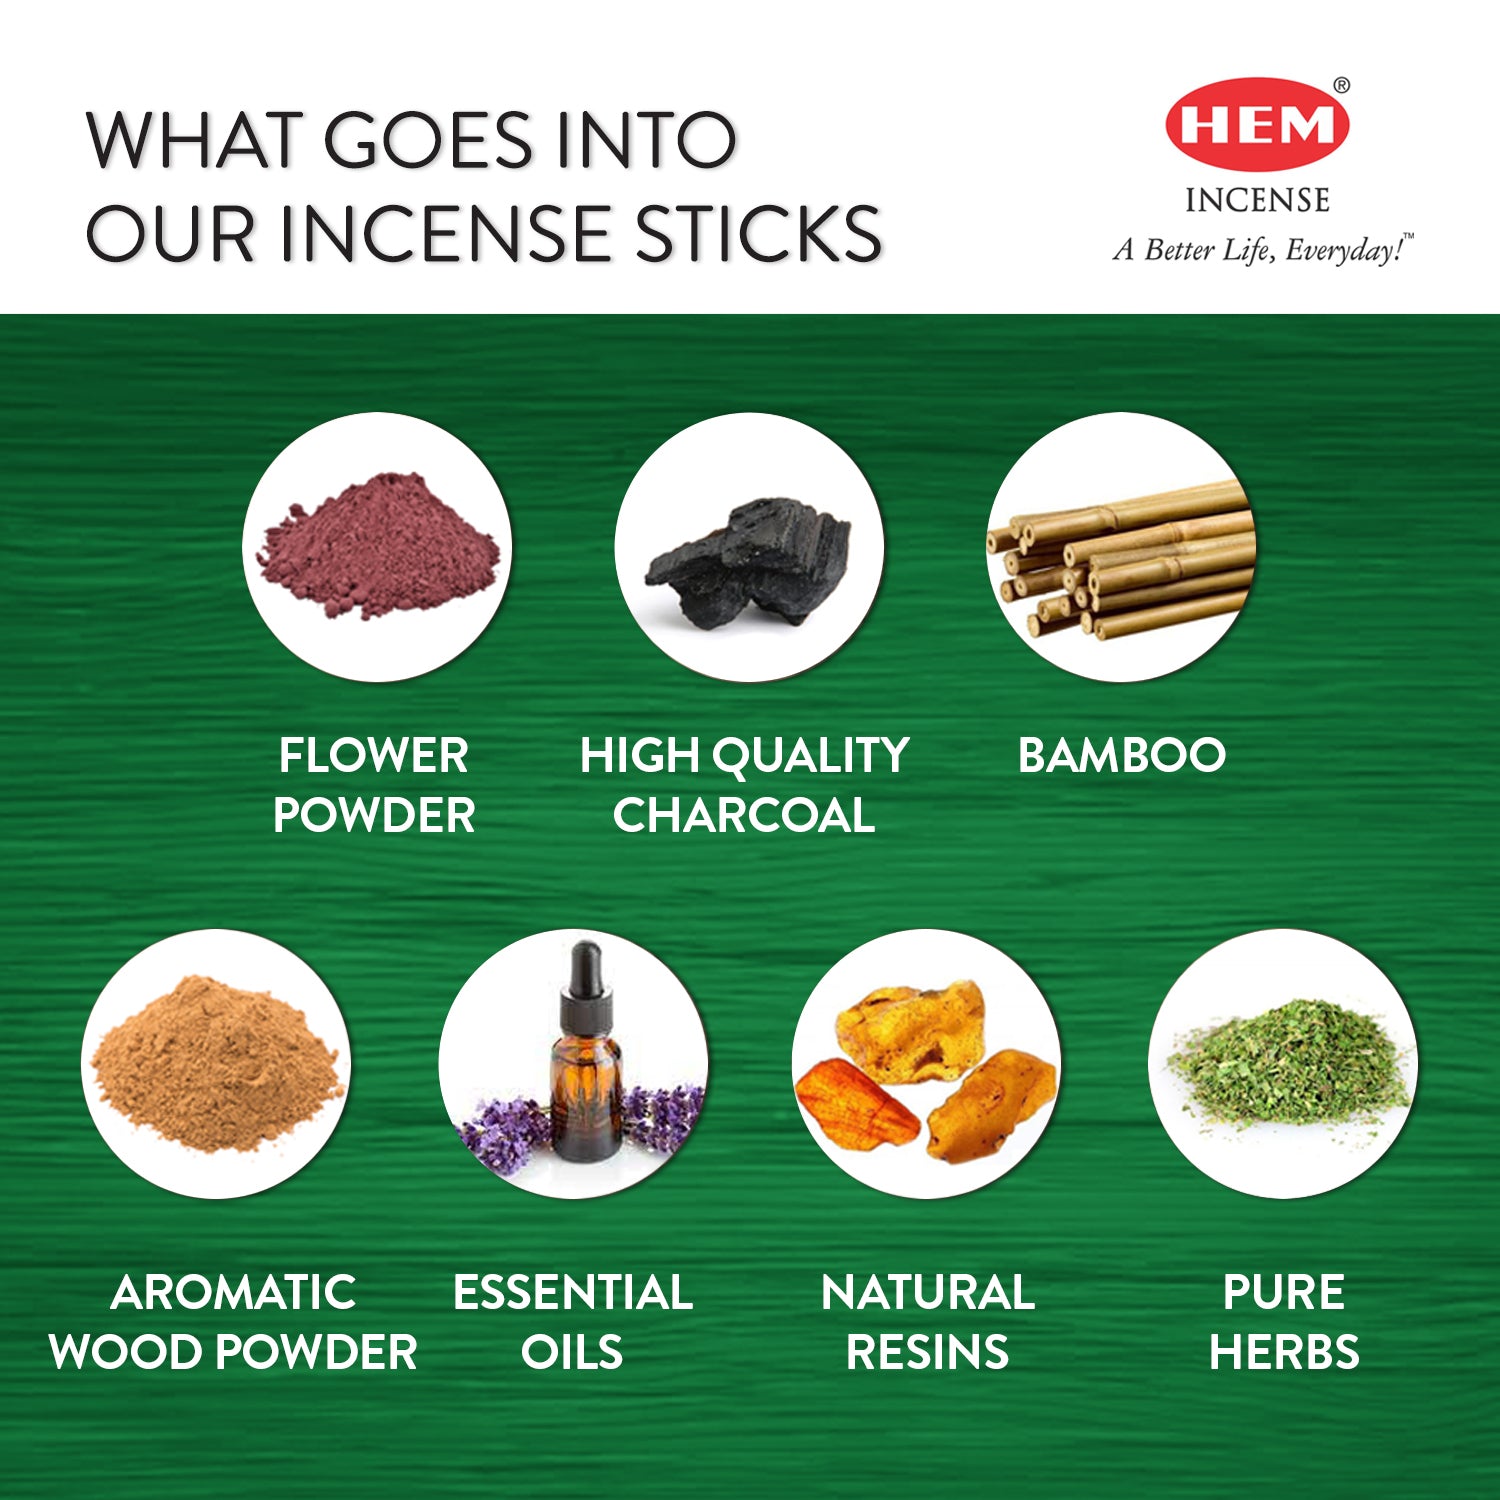 hem-cannabis-incense-sticks-ingredients